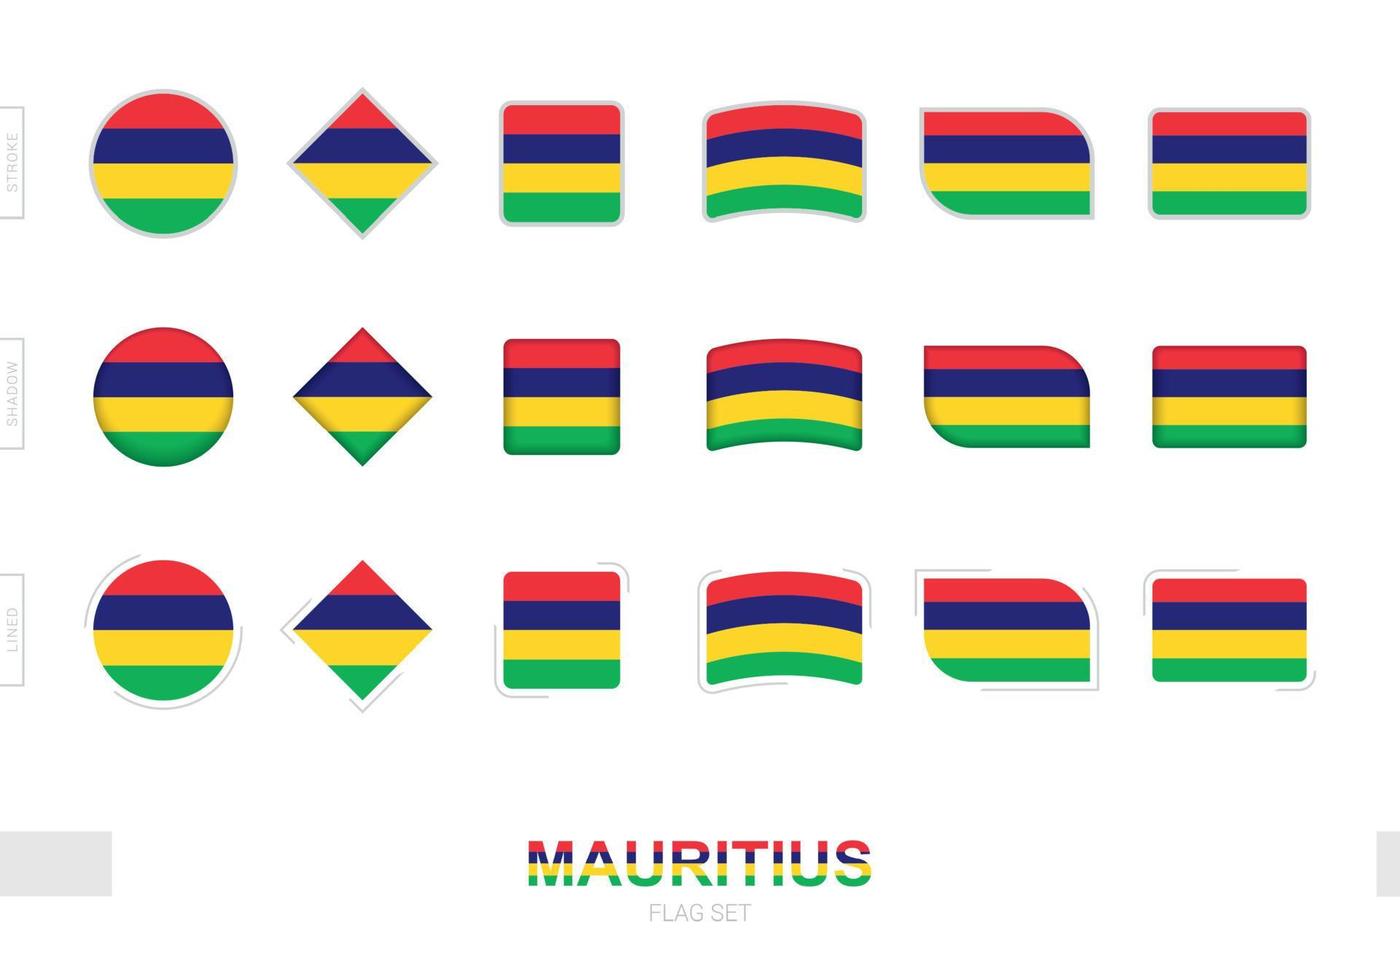 Mauritius-Flaggen-Set, einfache Flaggen von Mauritius mit drei verschiedenen Effekten. vektor